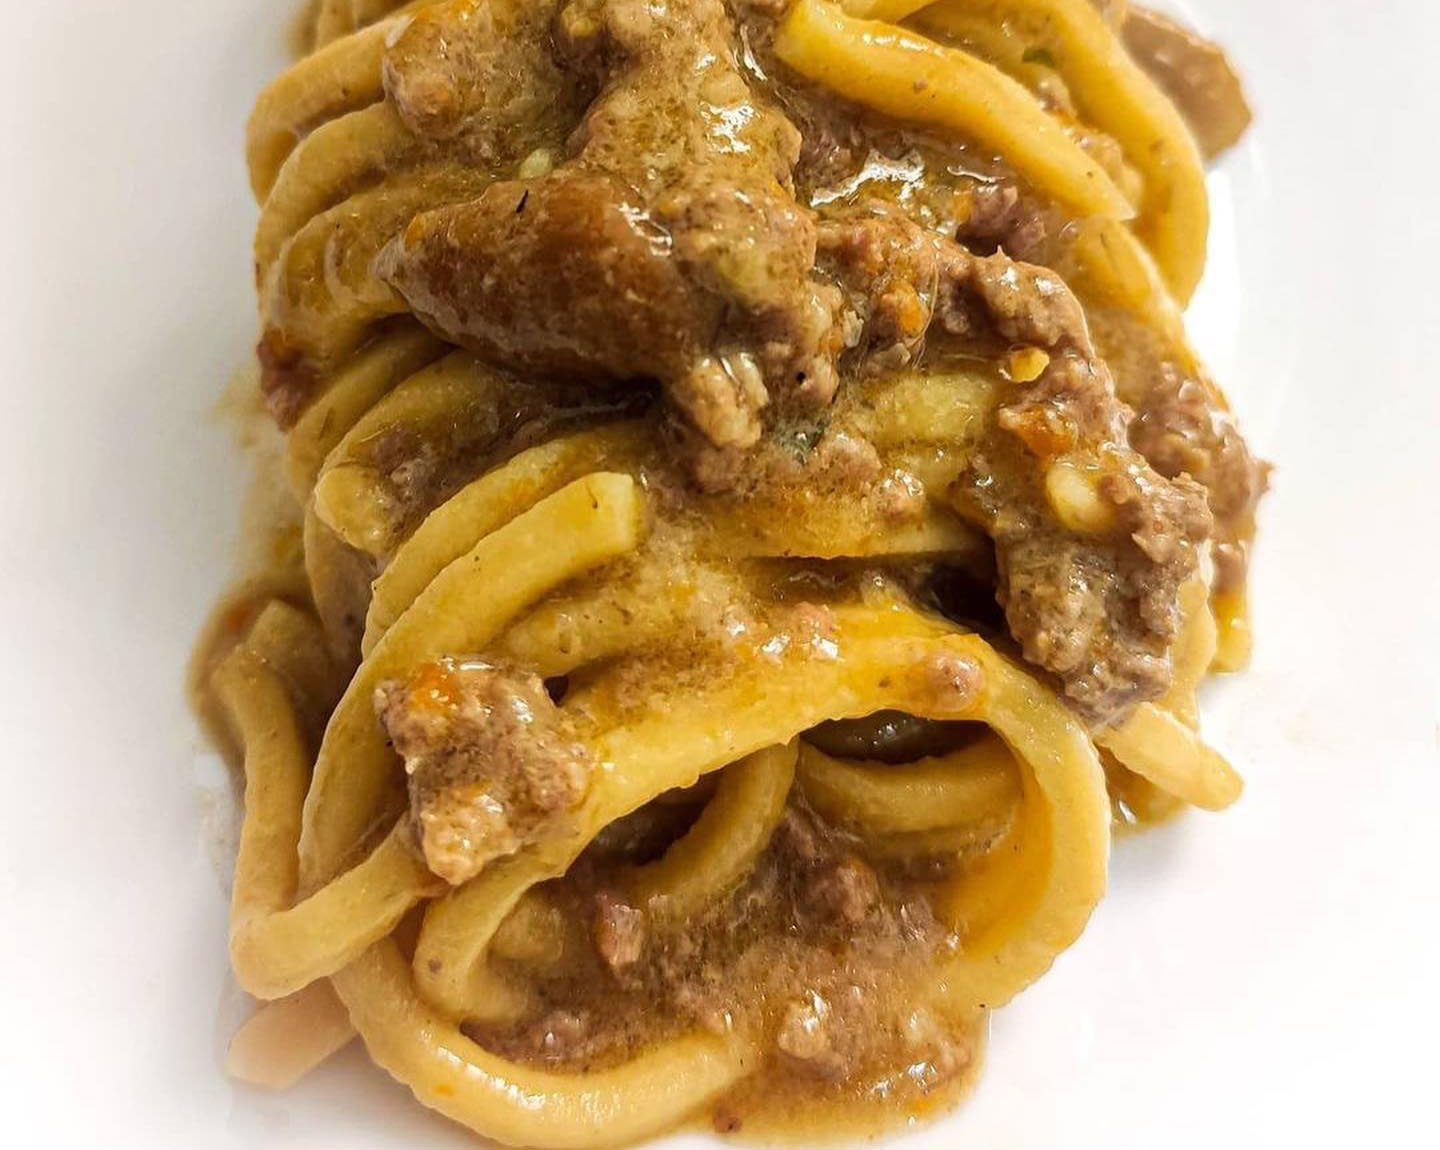 spaghetti alla roccaraso with mushrooms and truffles